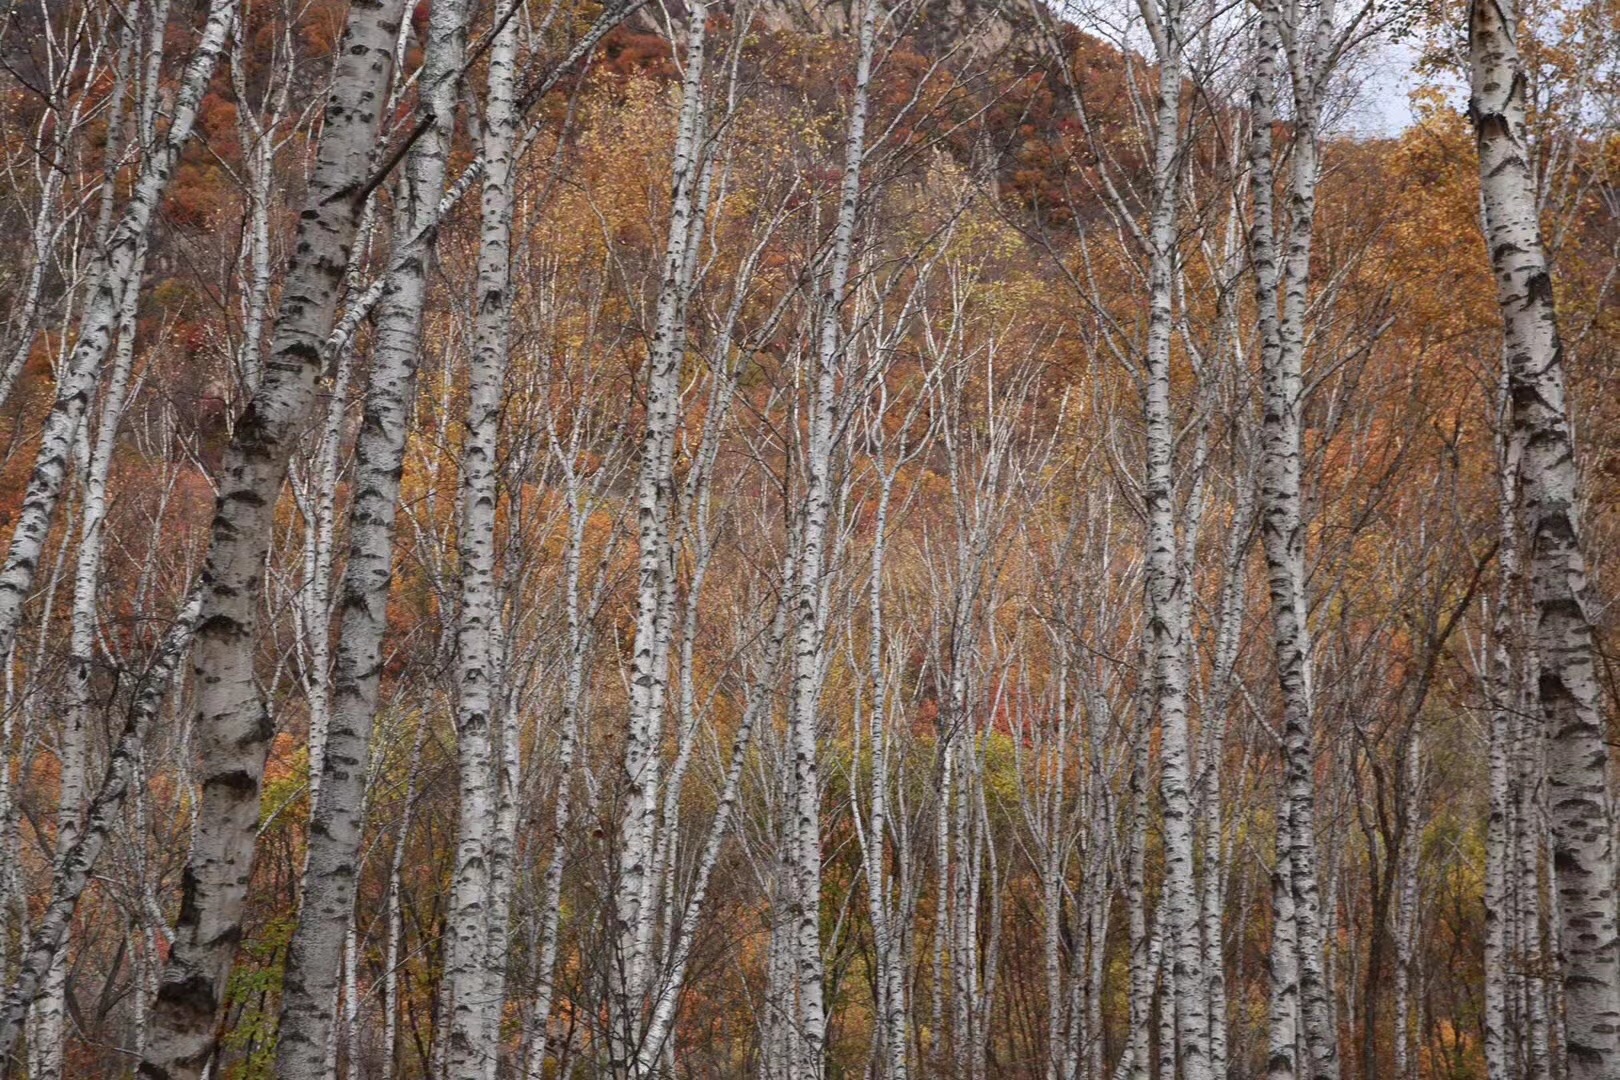 喇叭沟原始森林公园在最近几年秋